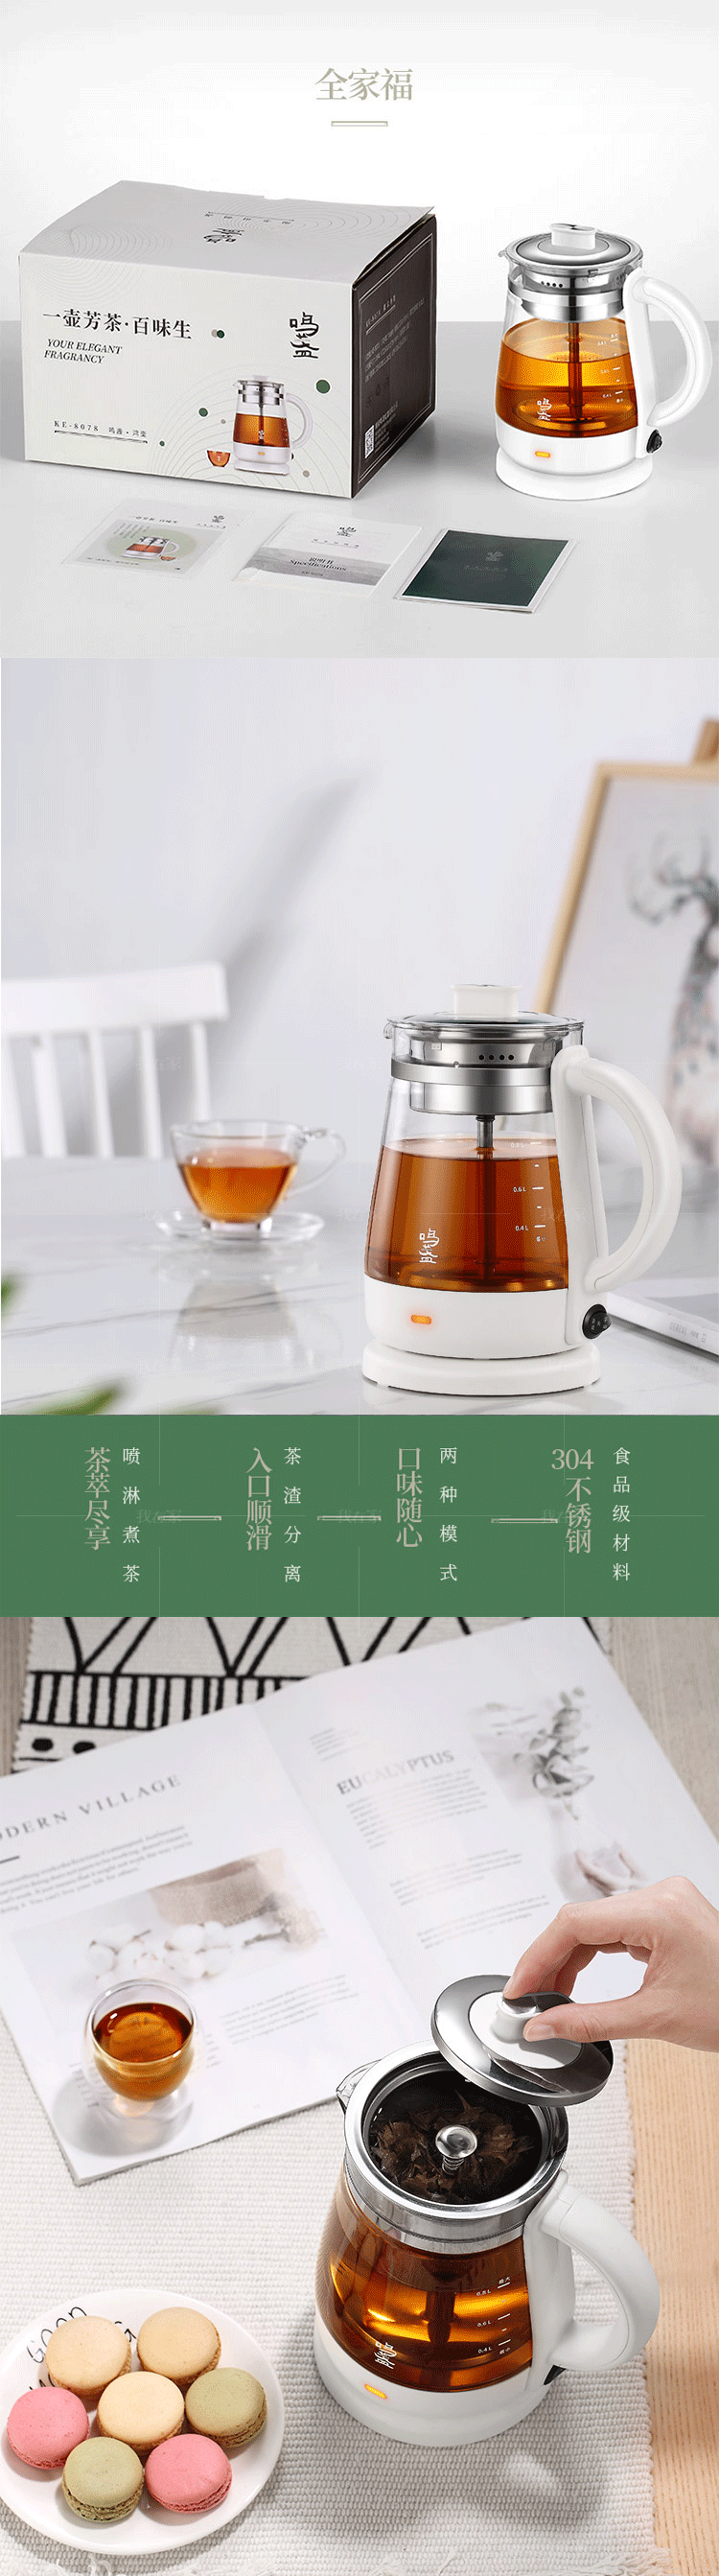 鸣盏系列鸣盏喷淋式煮茶器养生壶的详细介绍